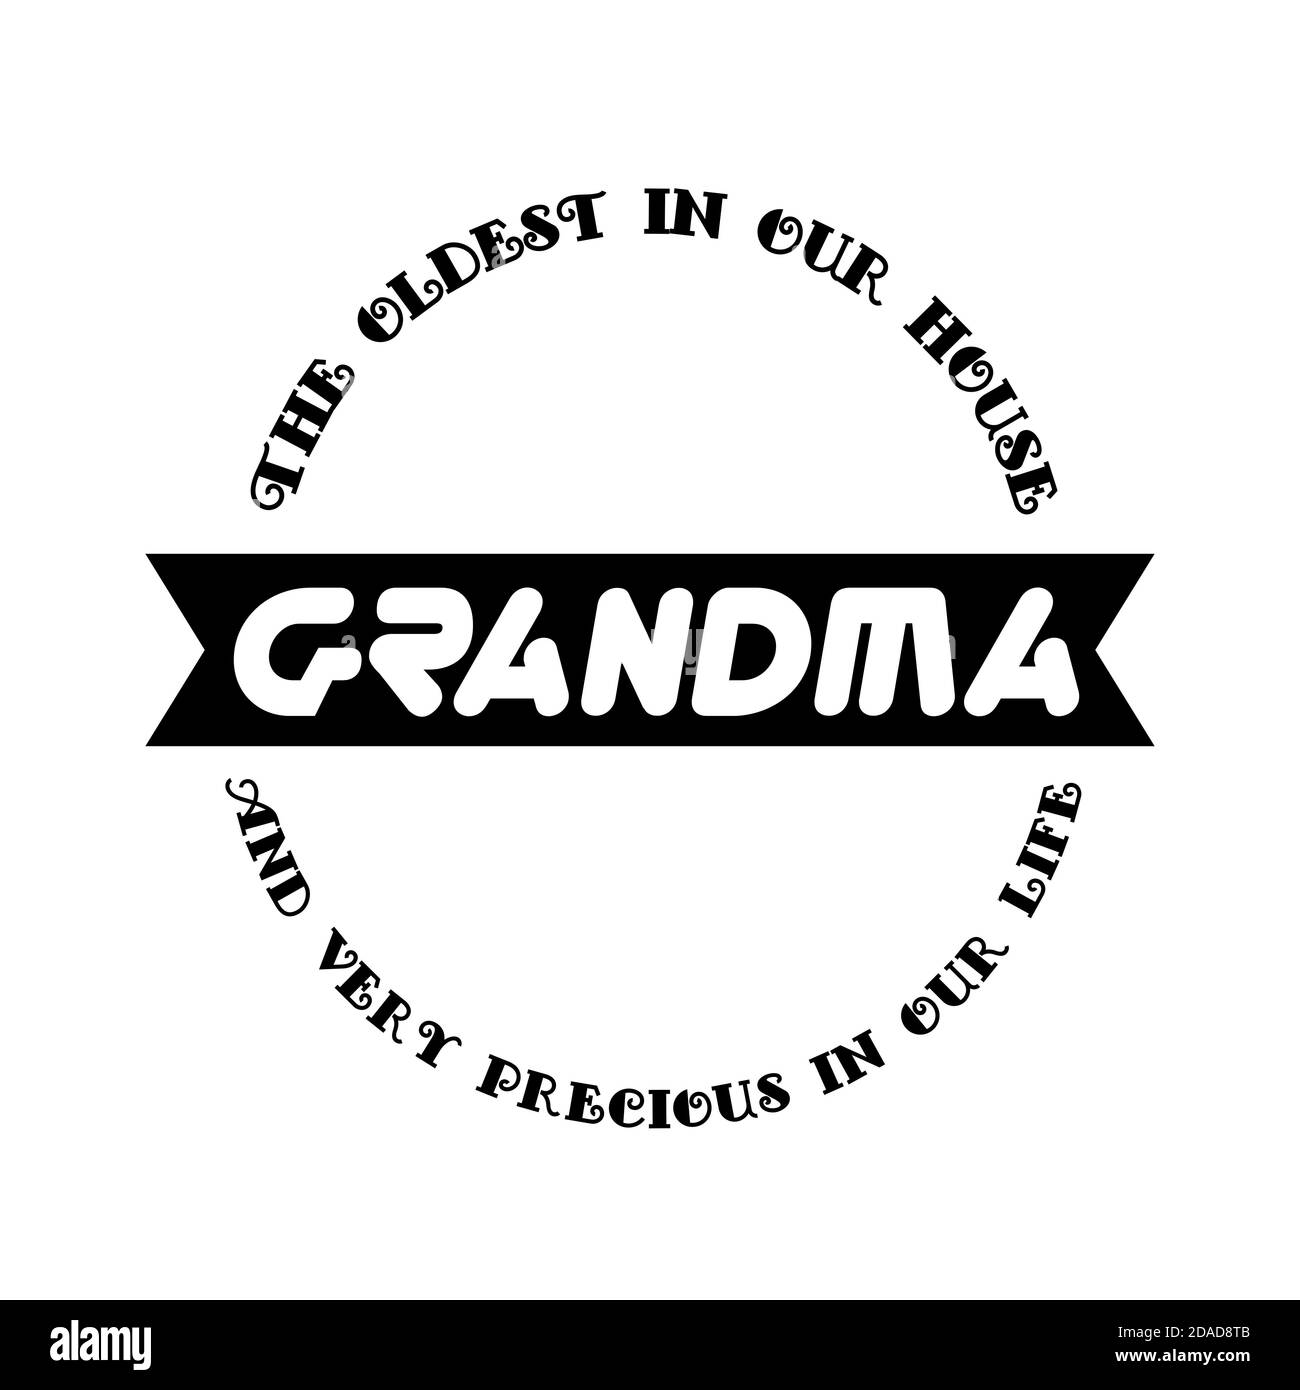 Love You Oma Abzeichen in Schwarz und Weiß Farben mit Phase die älteste in unserem Haus und sehr wertvoll in unserem Leben. Alles gute zum Tag der Großmutter! Stockfoto